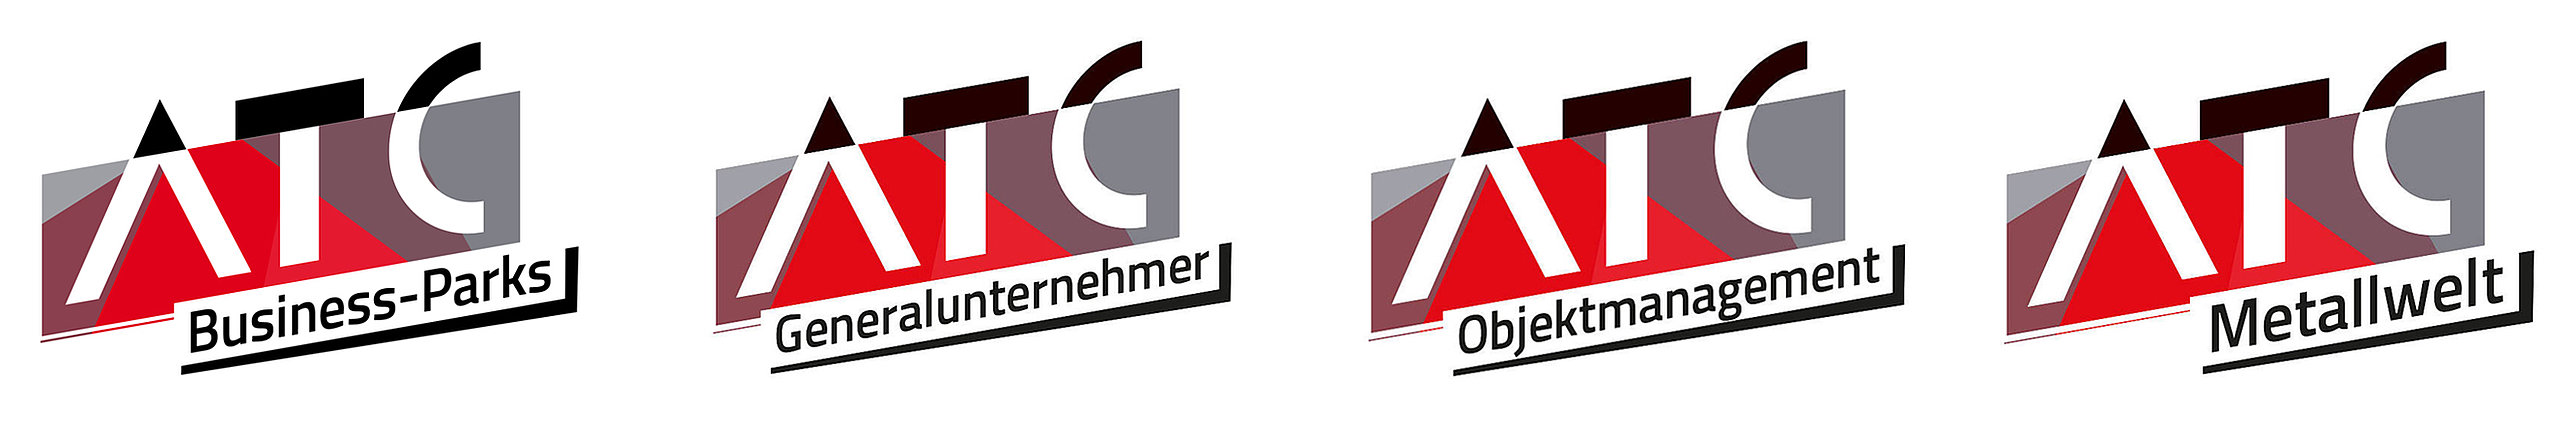 ATC group Logos